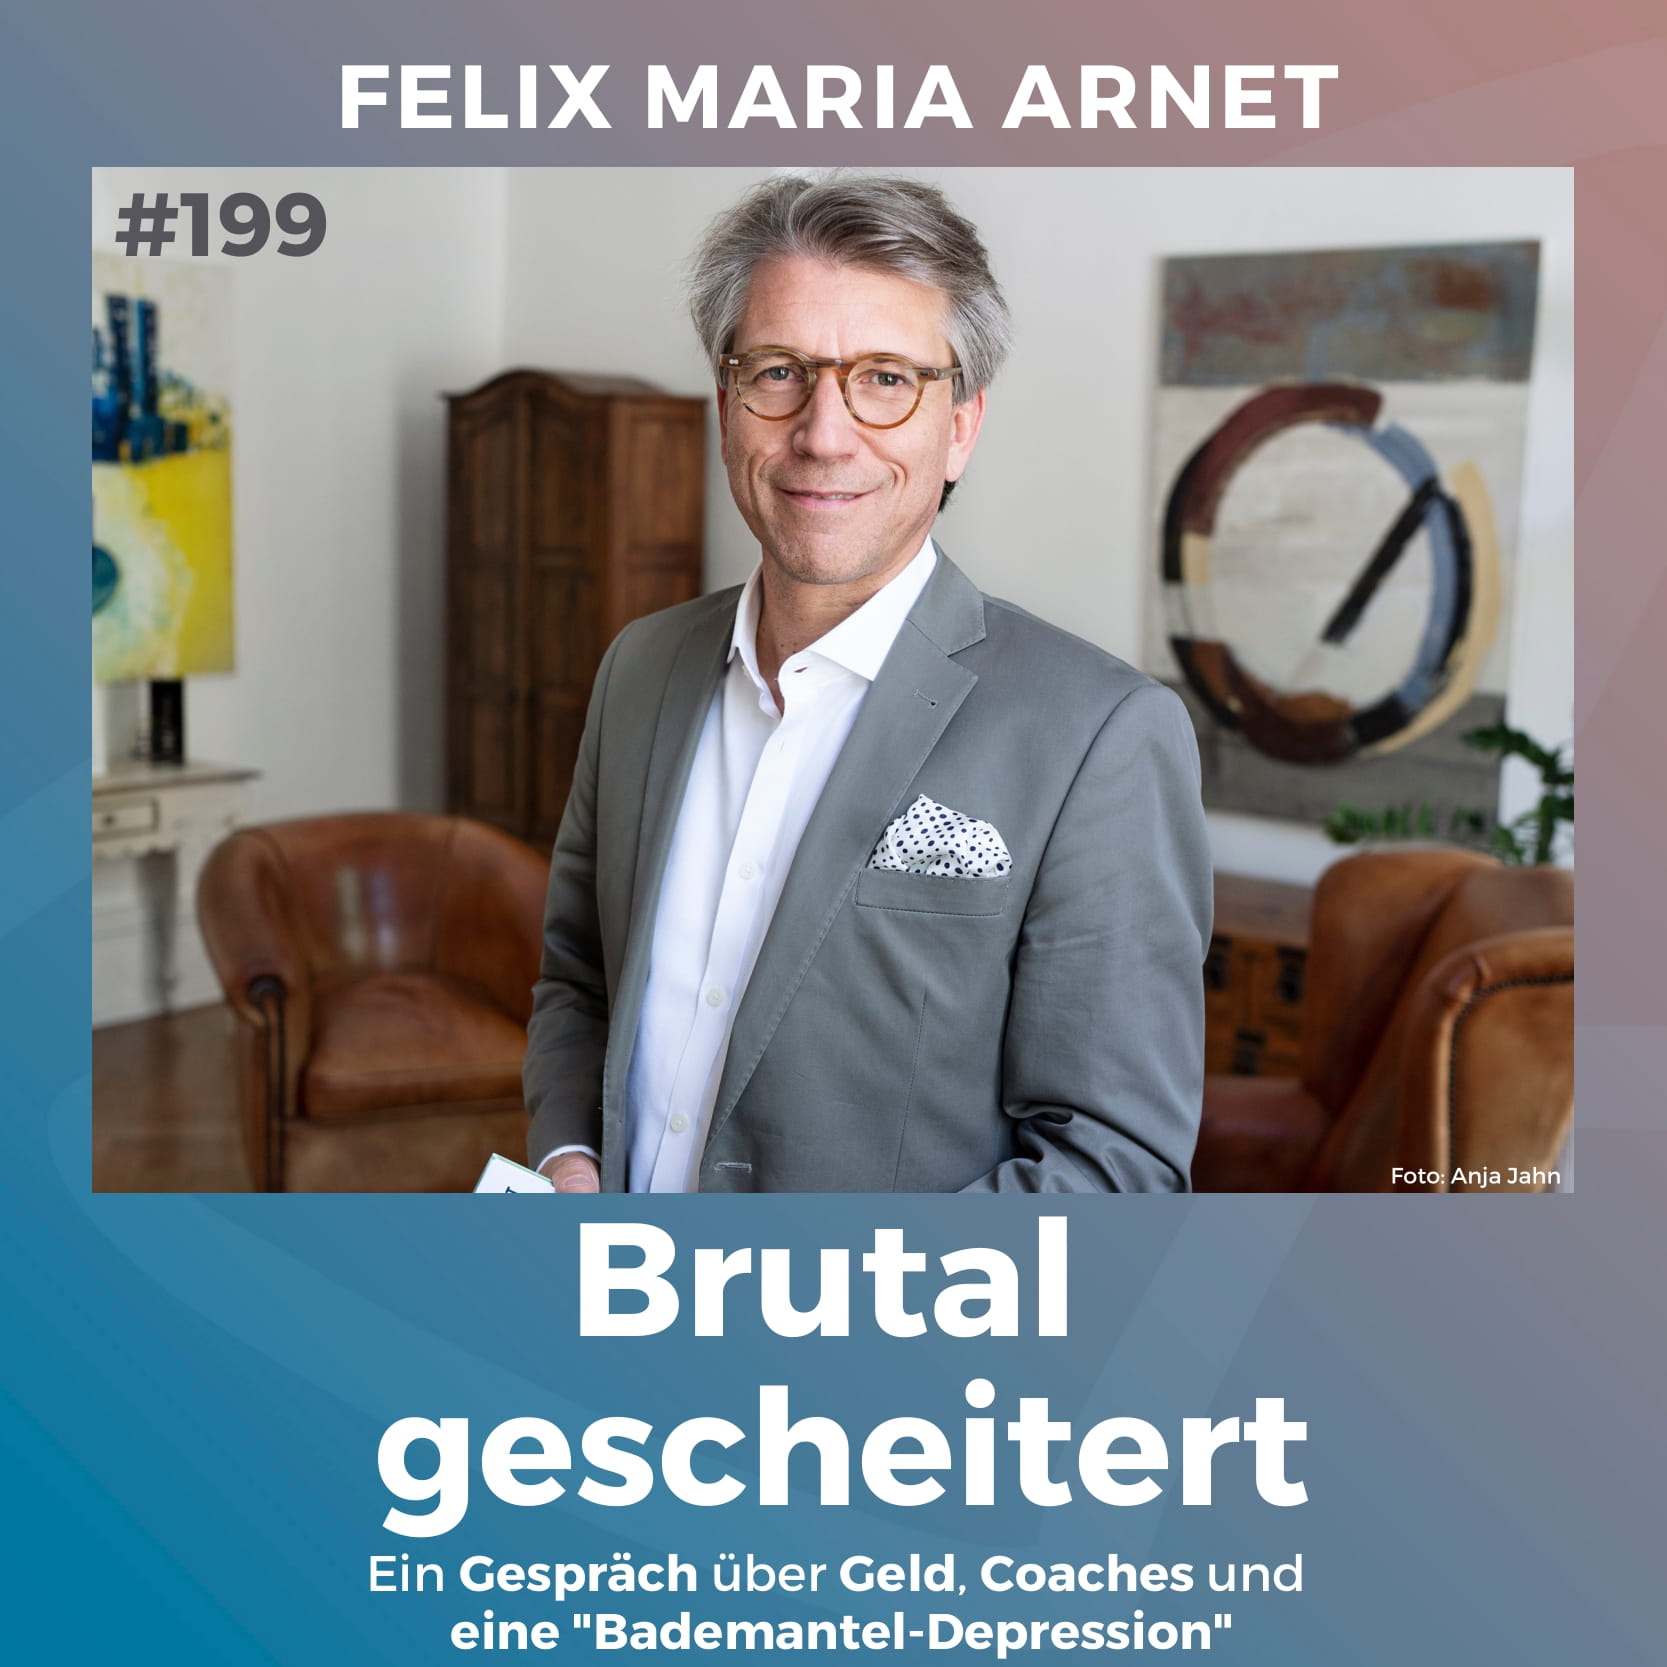 #199: Brutal gescheitert | Felix Maria Arnet